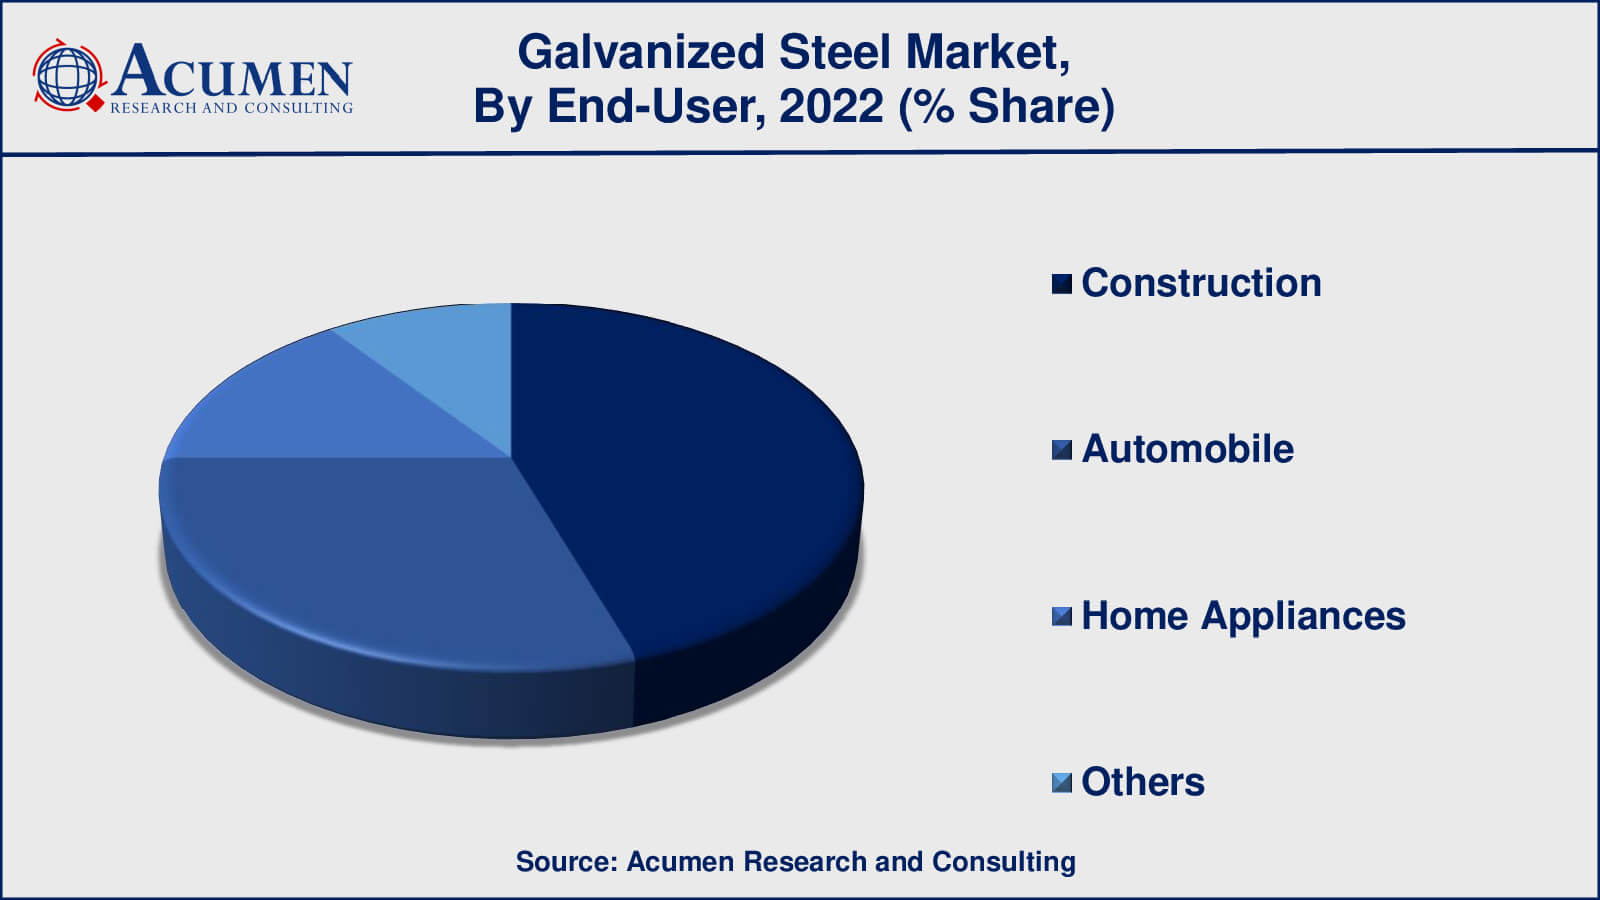 Galvanized Steel Market Share